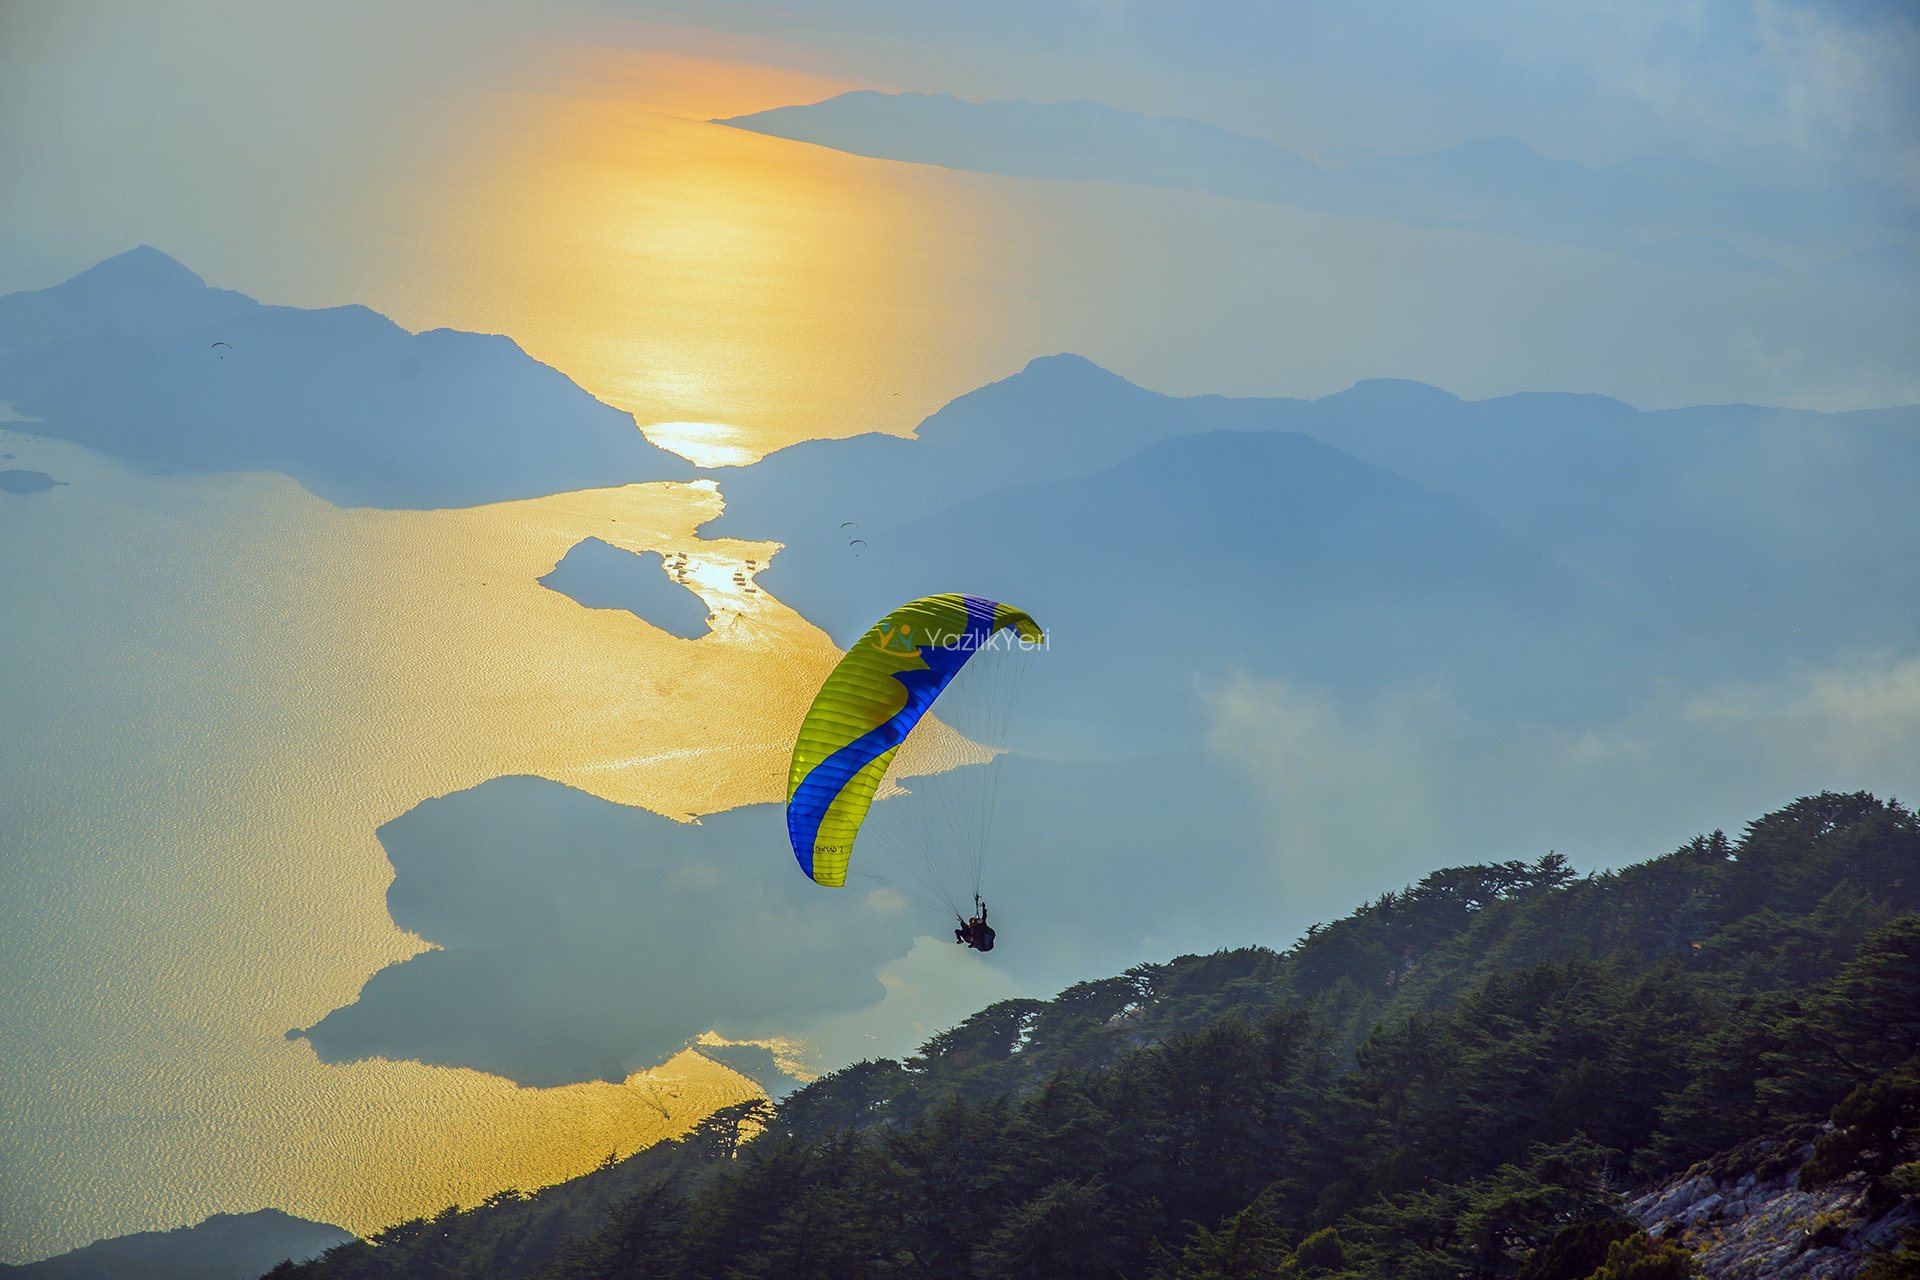 Holiday in Fethiye - Dünyaca Ünlü Fethiye Paragliding Hakkında Tüm Merak Edilenler